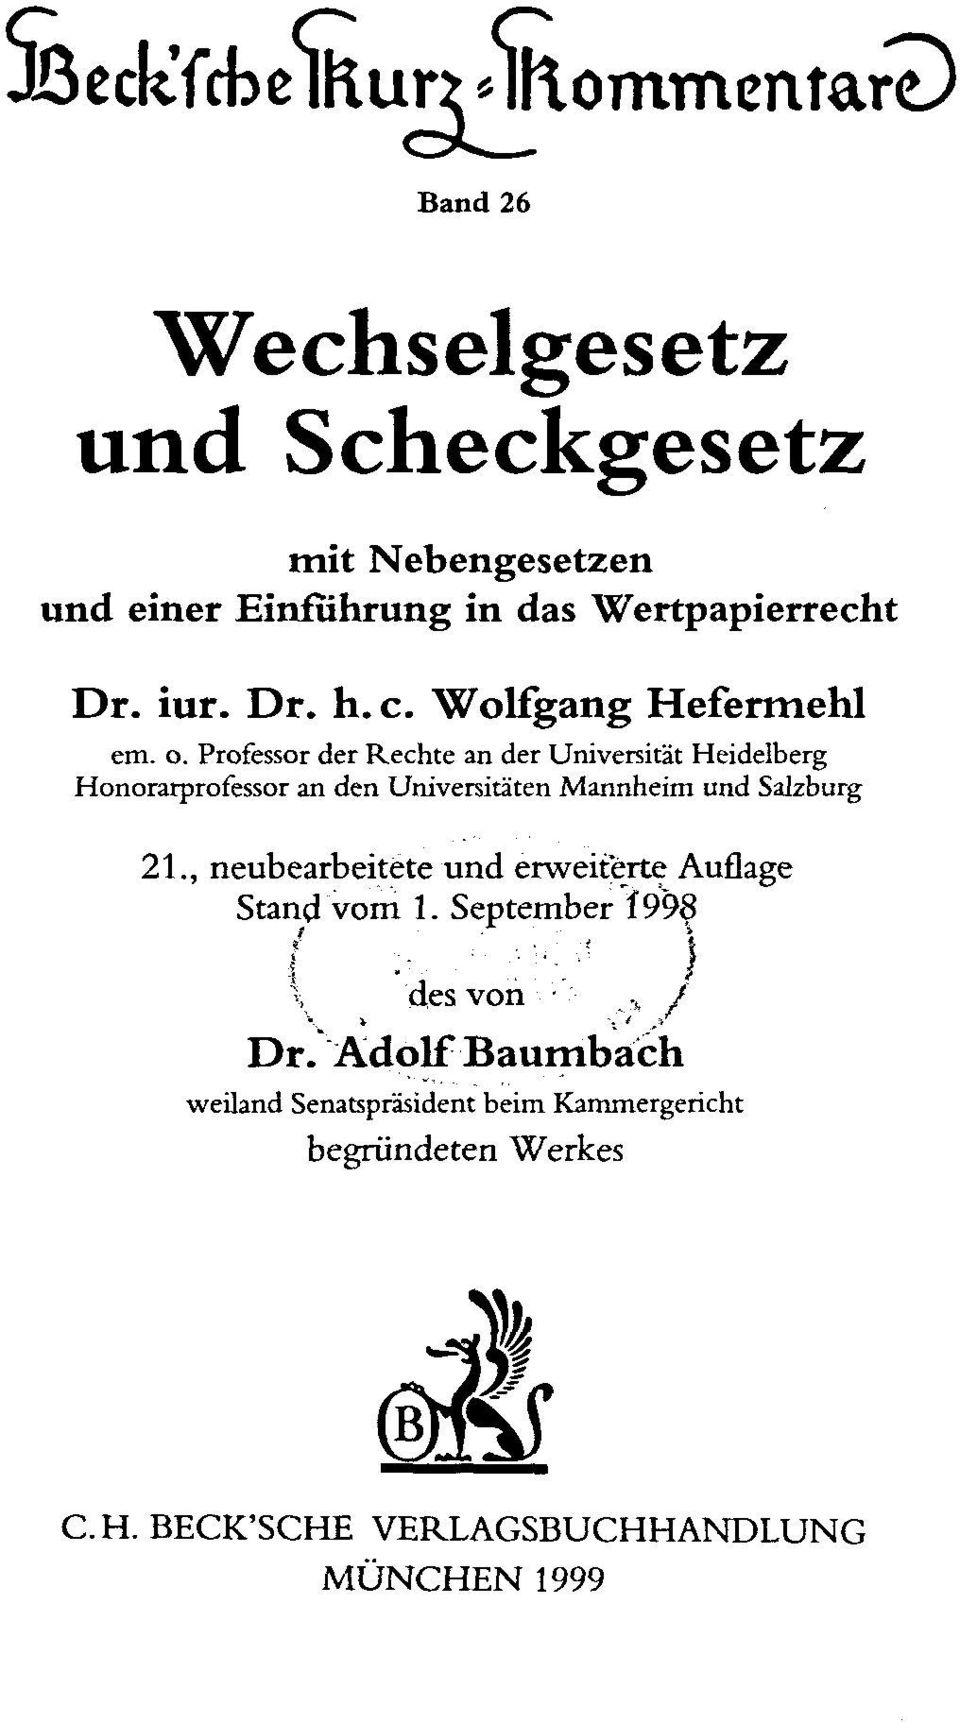 Professor der Rechte an der Universitat Heidelberg Honorarprofessor an den Universitá'ten Mannheim und Salzburg 21.